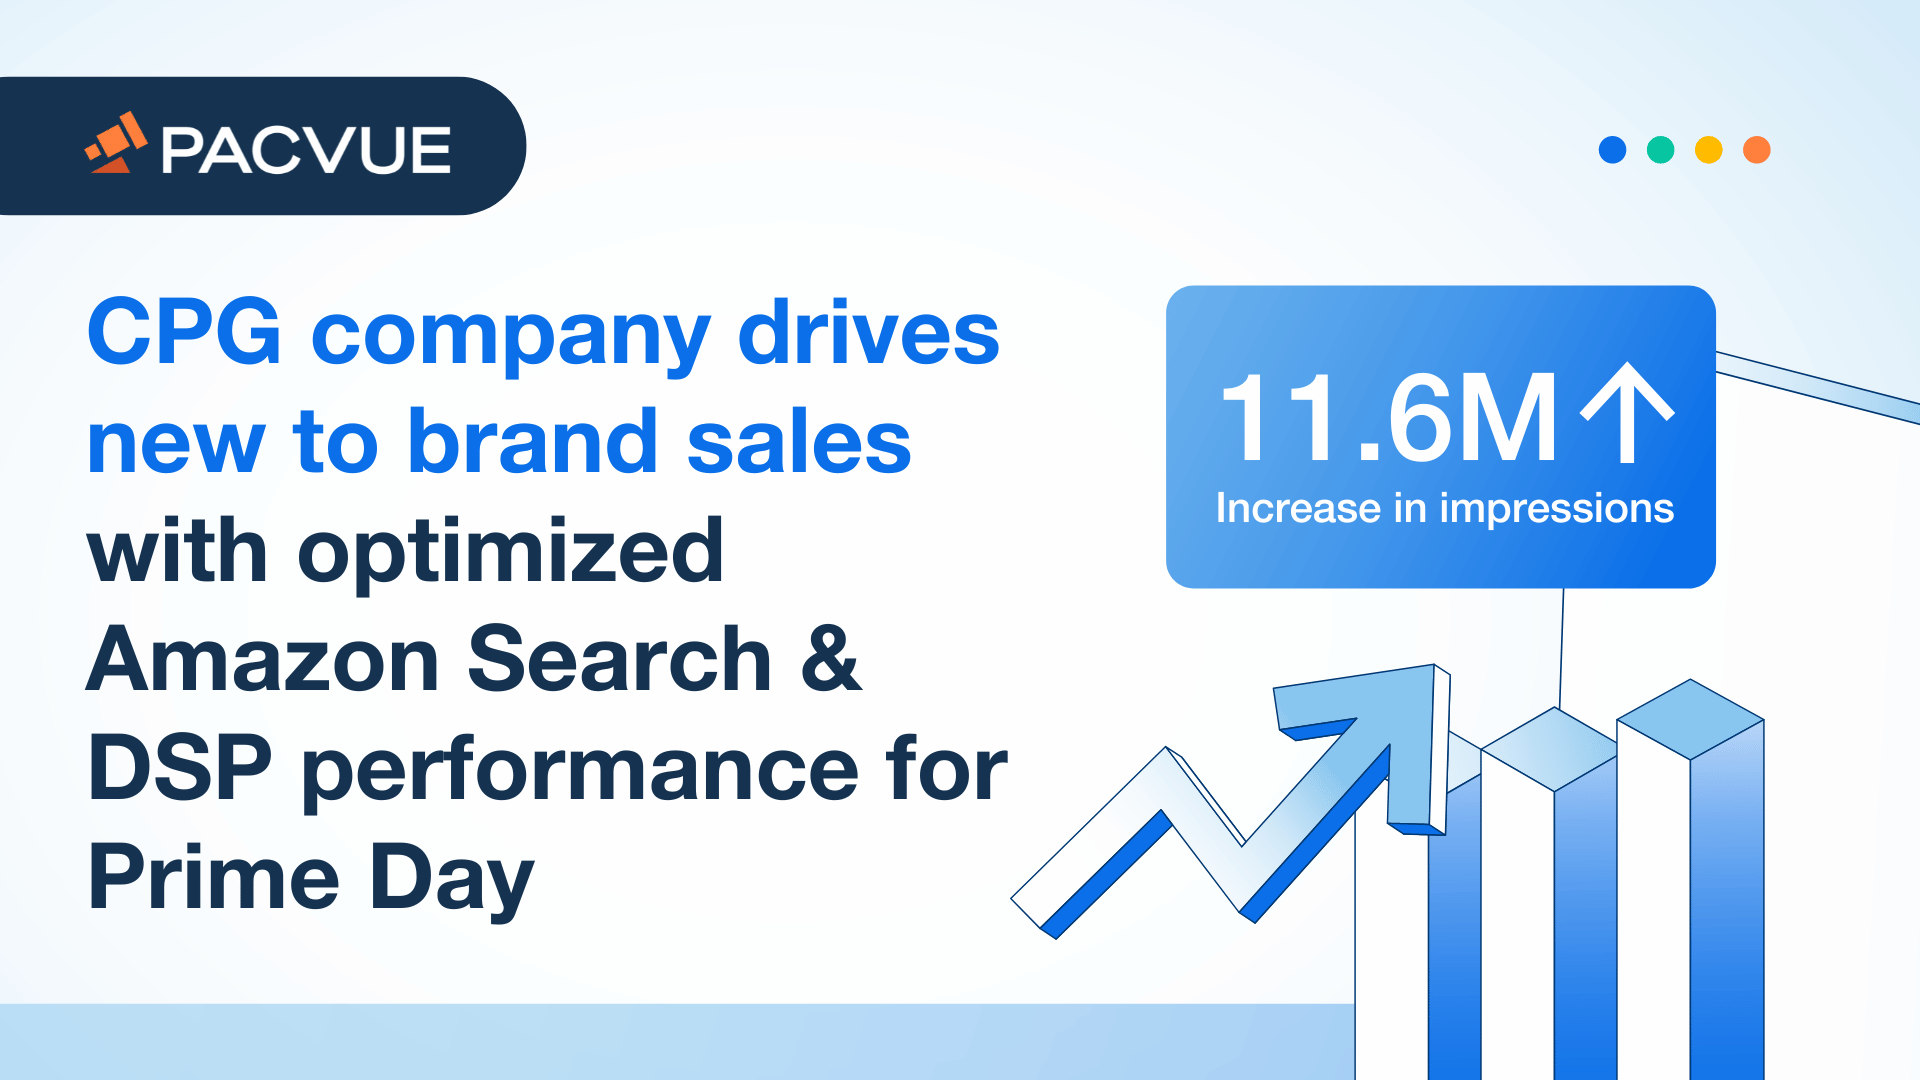 Una empresa de gran consumo impulsa las ventas de productos nuevos con un rendimiento optimizado de Amazon Search y DSP para el Prime Day.